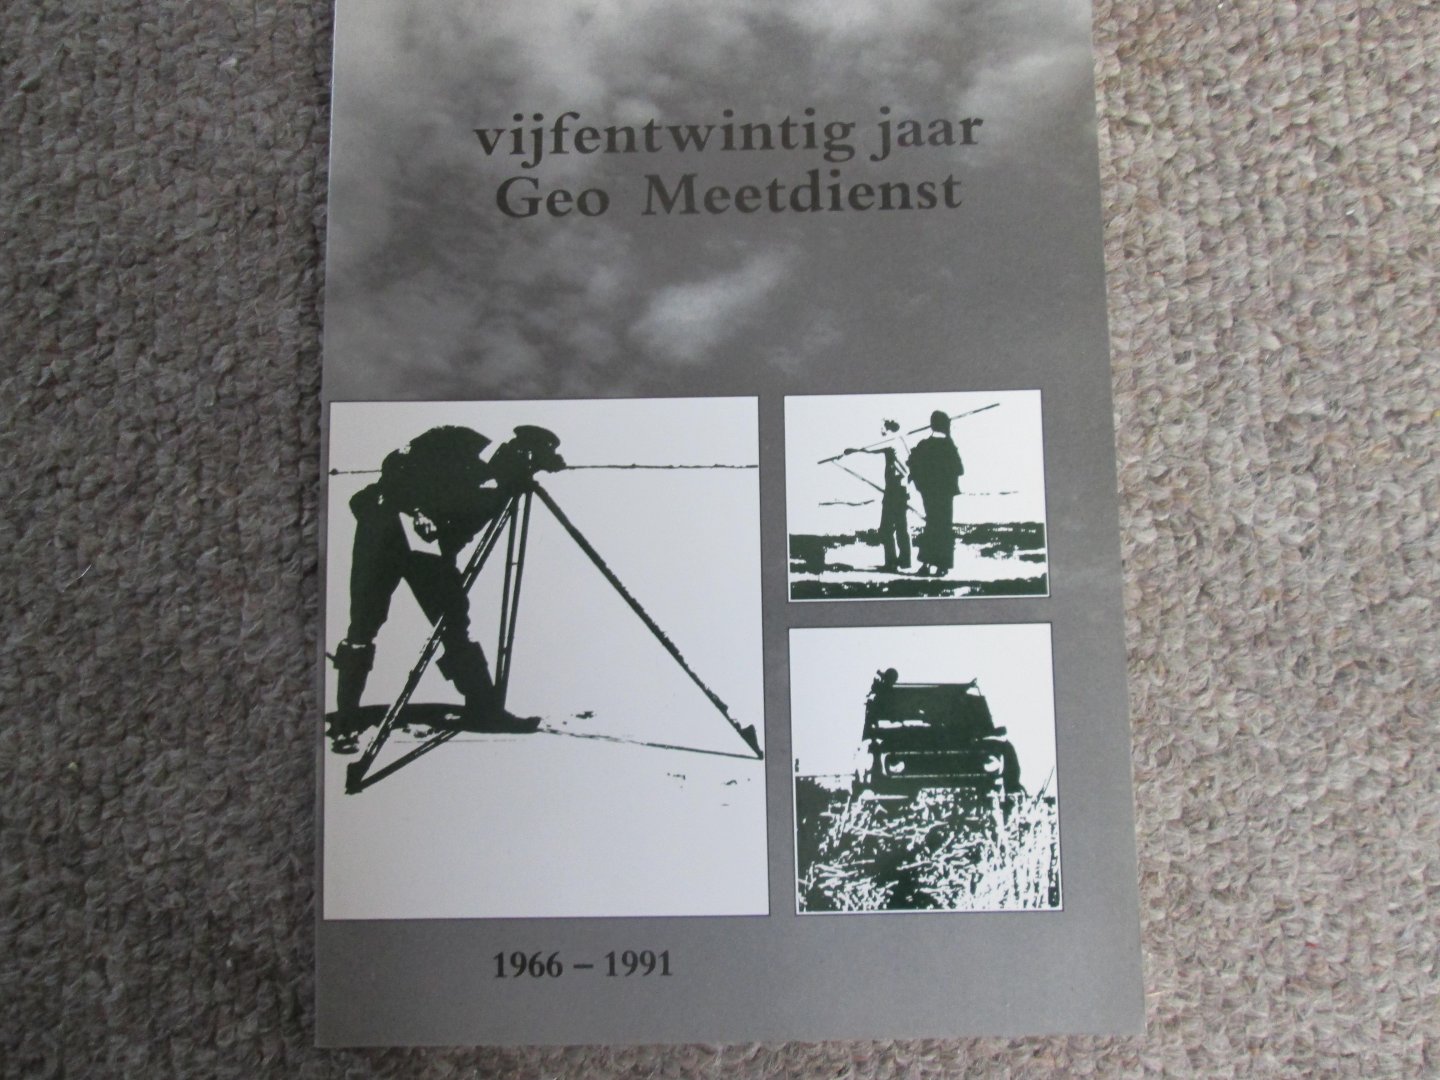 Wilts , G. - VIJFENTWINTIG JAAR GEO MEETDIENST 1966 - 1991